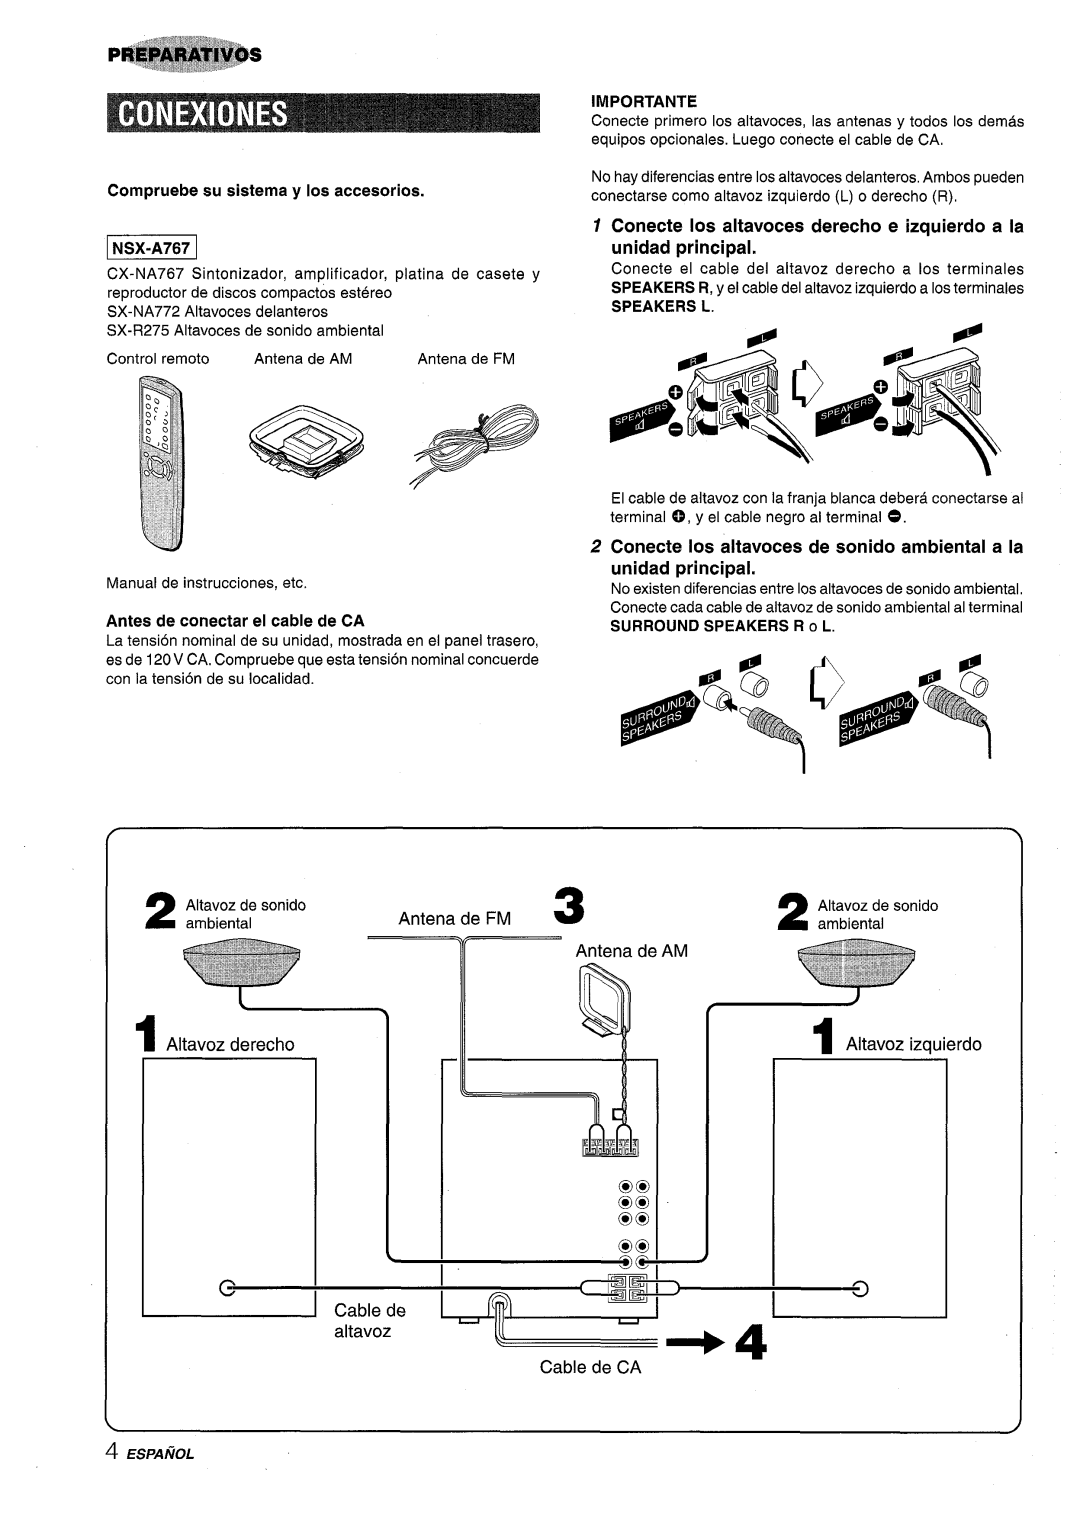 Sony NSX-A767 b!!2w!z, f Q, Compruebe su sistema y Ios accesorios, Conecte Ios altavoces derecho e izquierdo a la, ~ Cable 